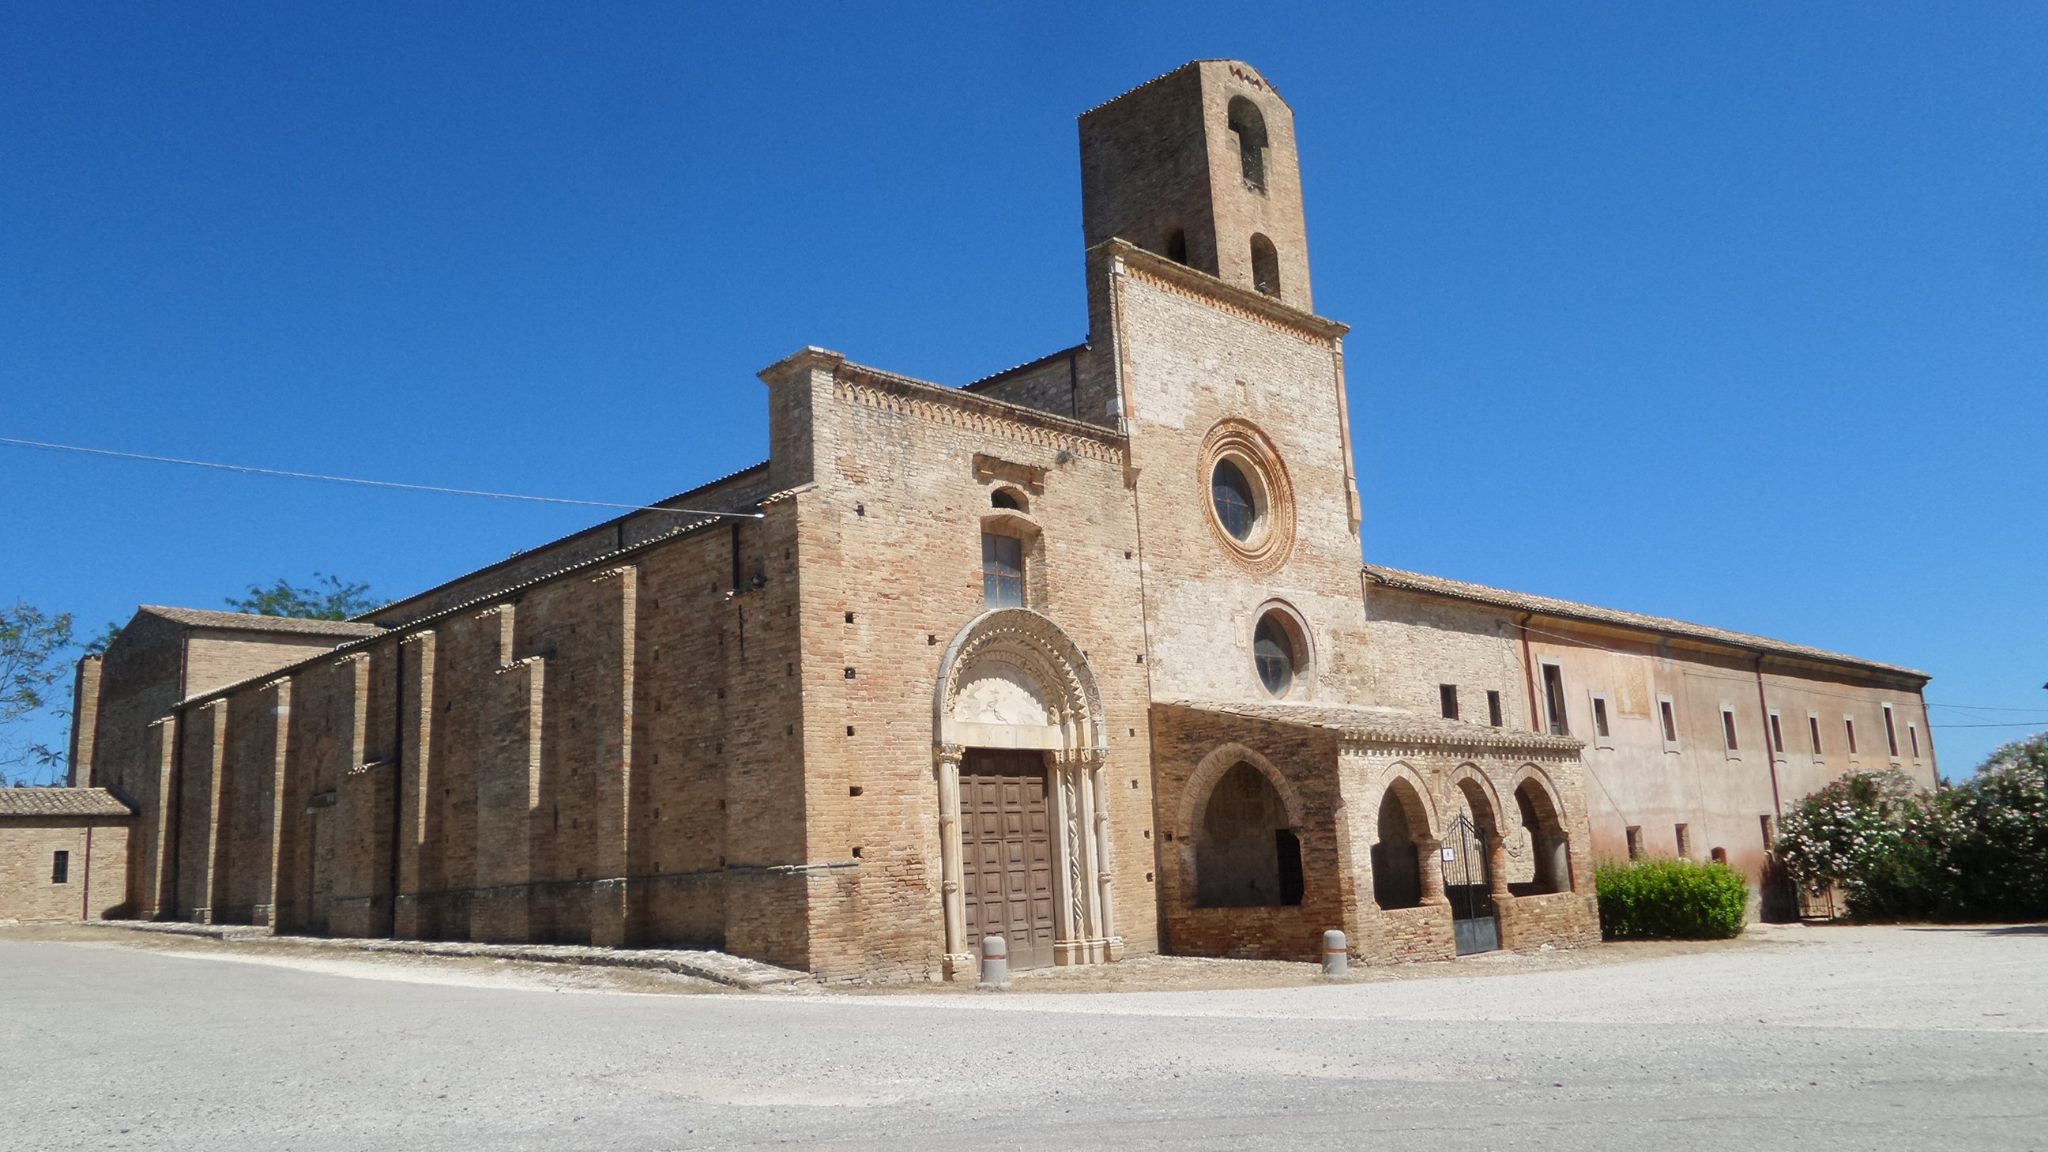 Convento di S. Maria di Propezzano (chiostro, conventuale) - Morro d'Oro (TE) 